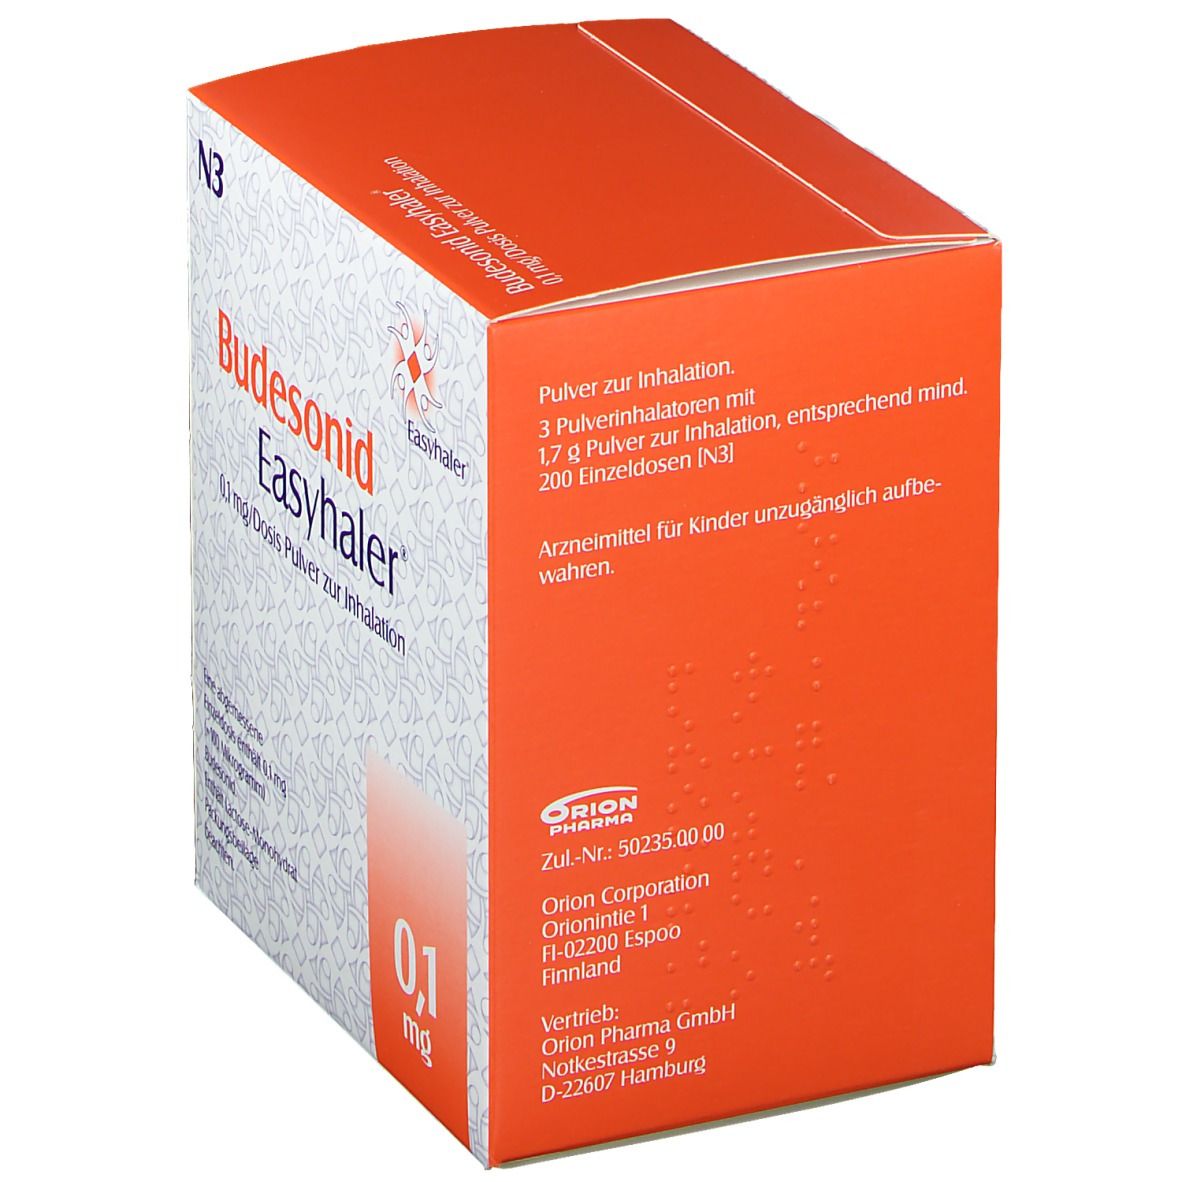 Budesonid Easyhaler® 0,1 mg/Dosis